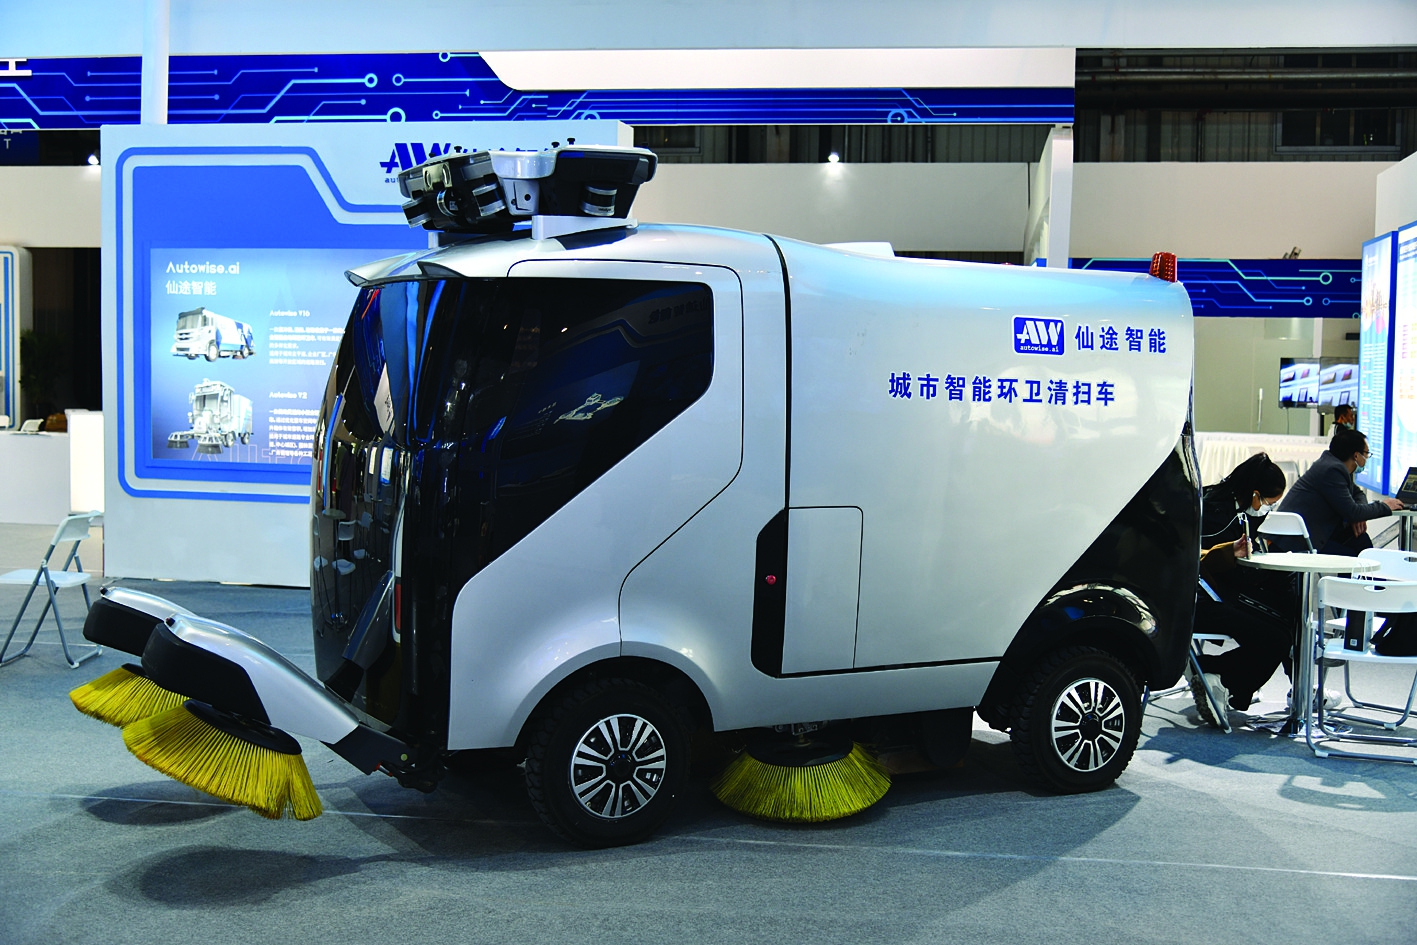 能对话的机器人“警察”等 东北亚博览会的“创新感”让人惊叹